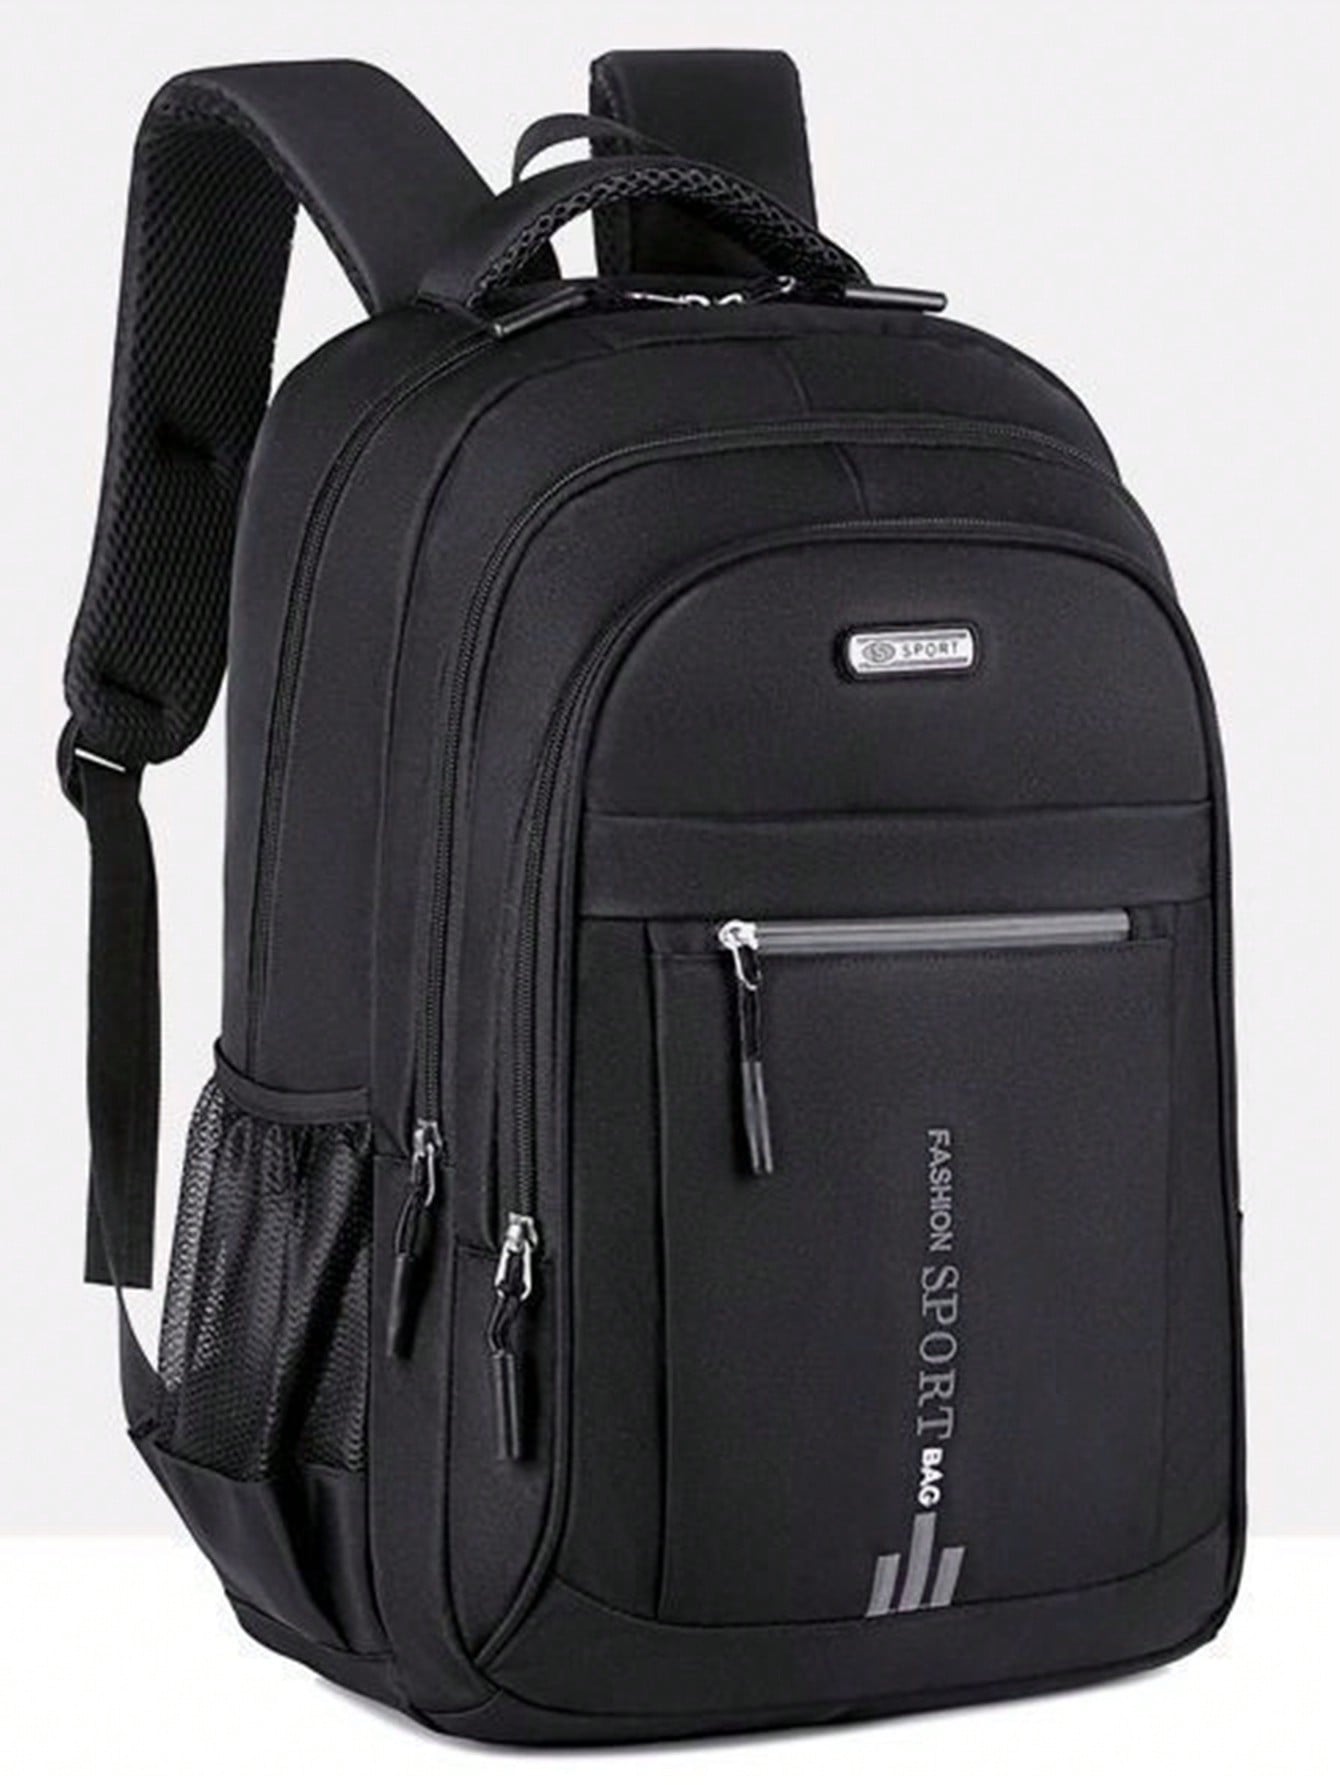 Рюкзак для выездного рабочего багажа, черный